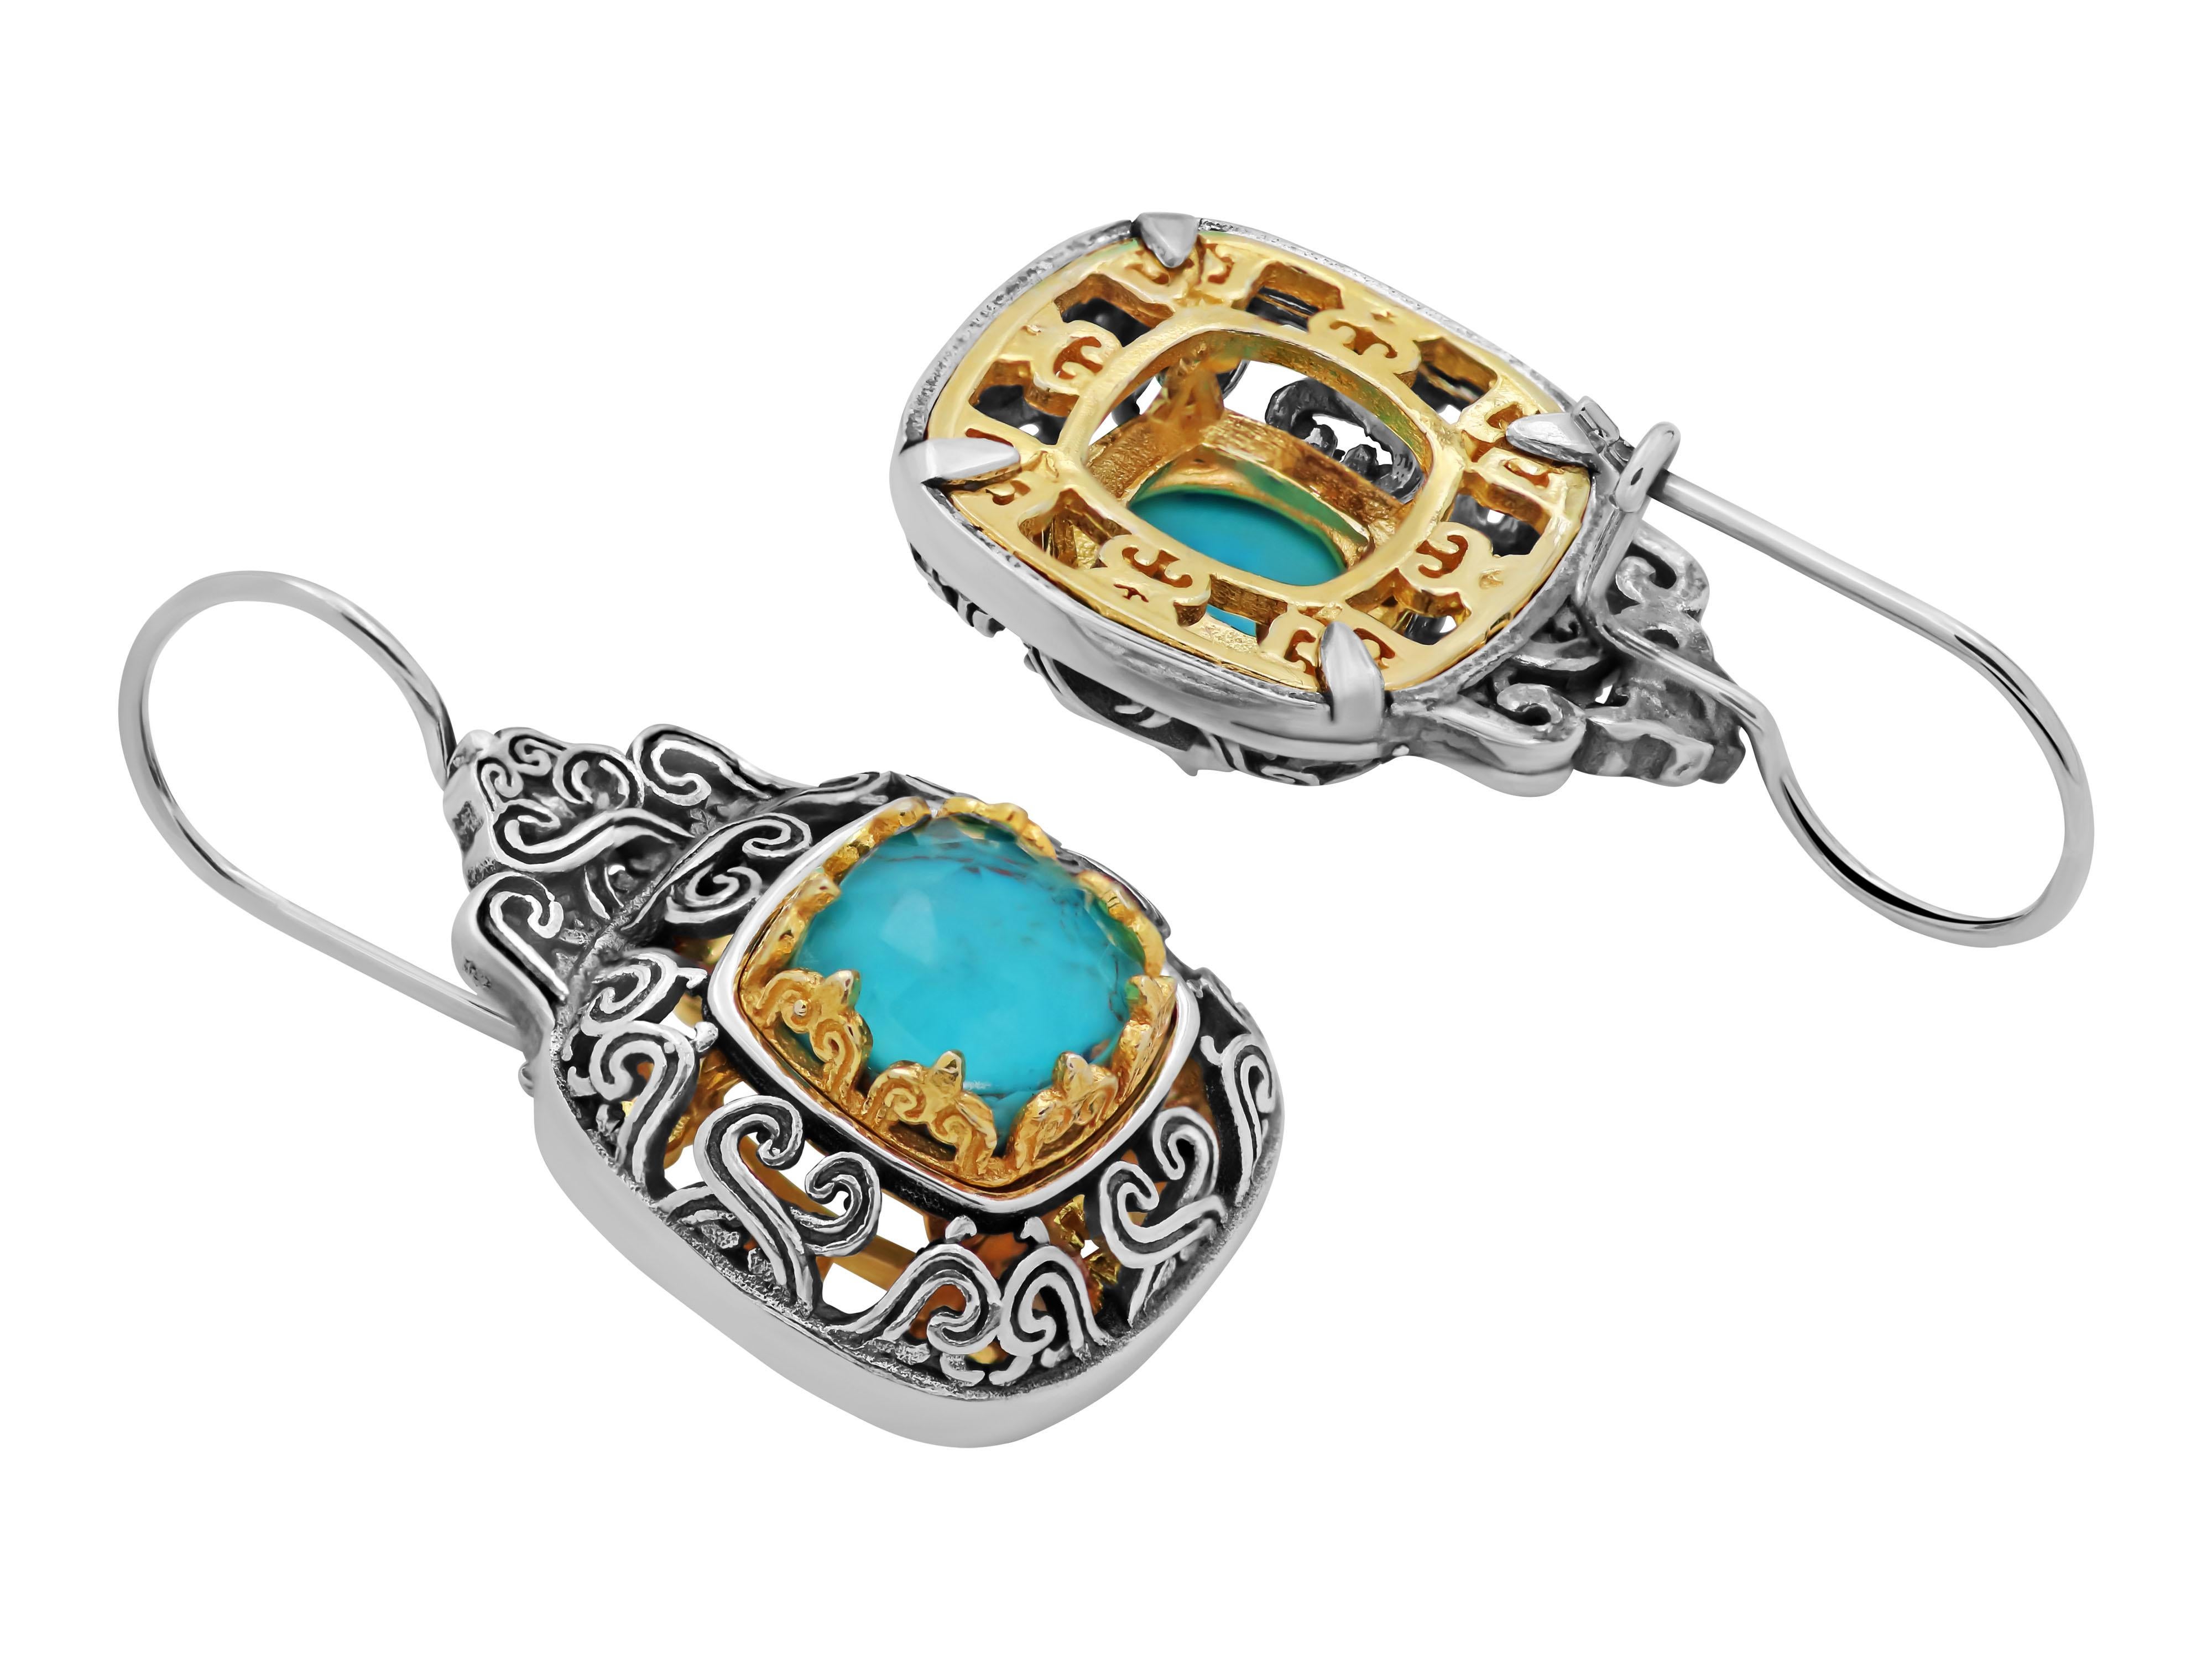 Byzantinische Ohrringe aus Sterlingsilber mit komplizierten Details und vergoldeten Elementen, die die Schönheit und das Niveau der Arbeit erhöhen. Mit Kupfertürkis besetzt, ein Stein, der ihn noch interessanter macht.